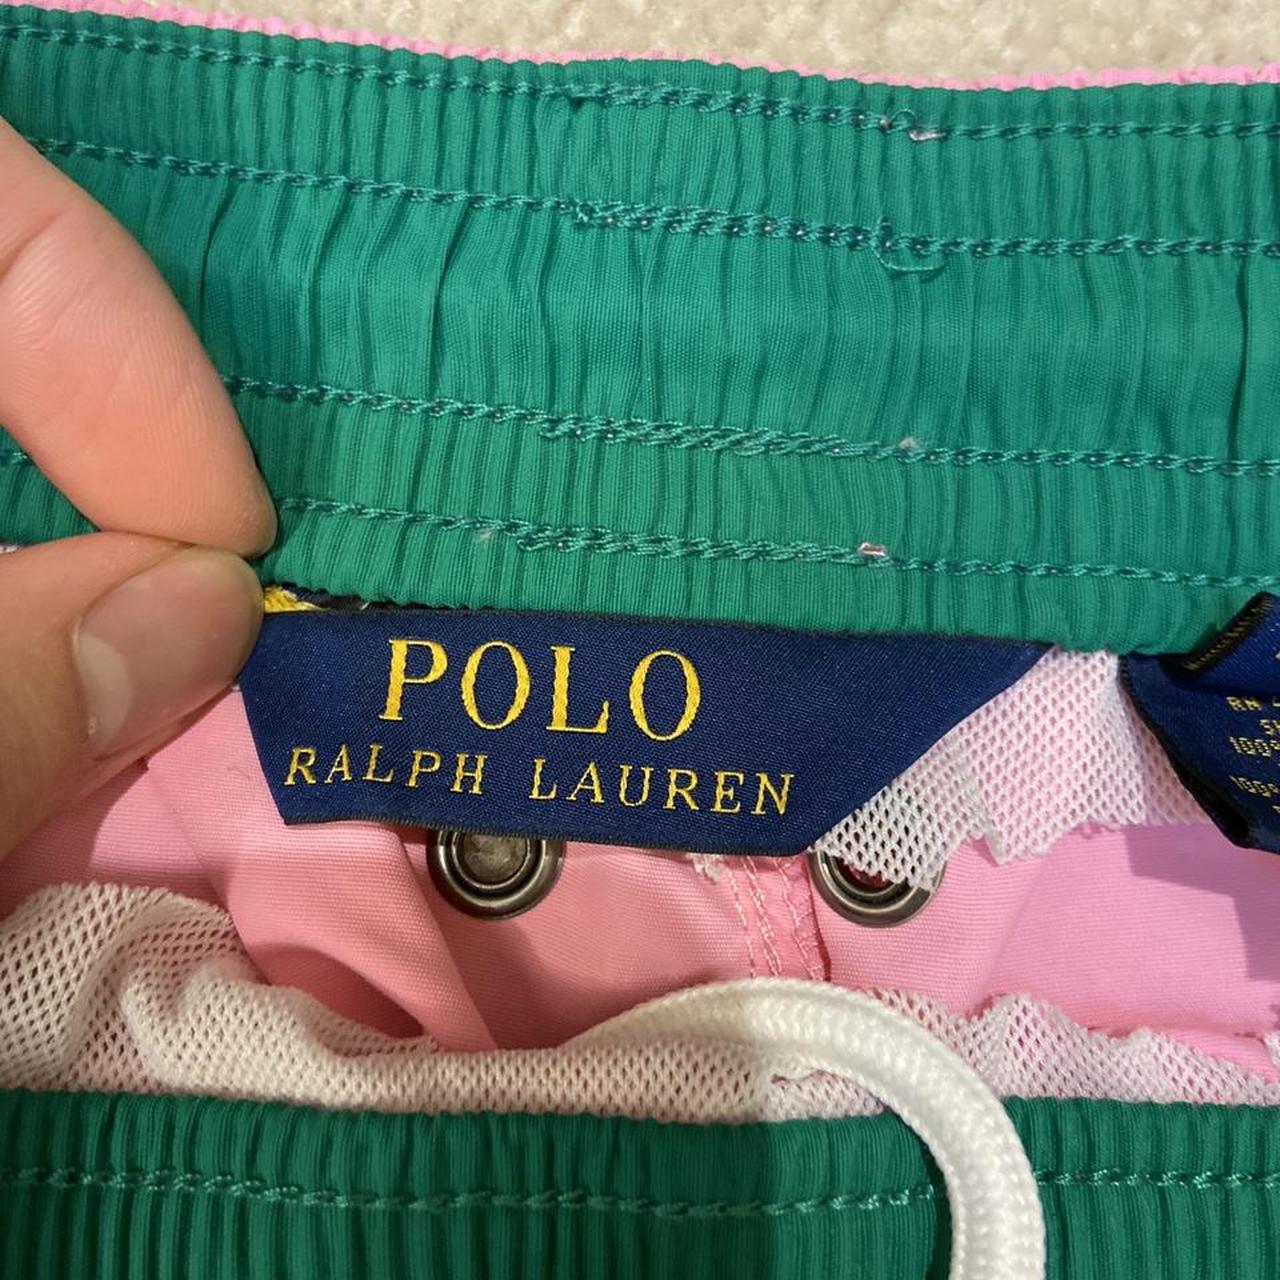 Polo Ralph Lauren Pink Swim Trunks XL Size:... - Depop